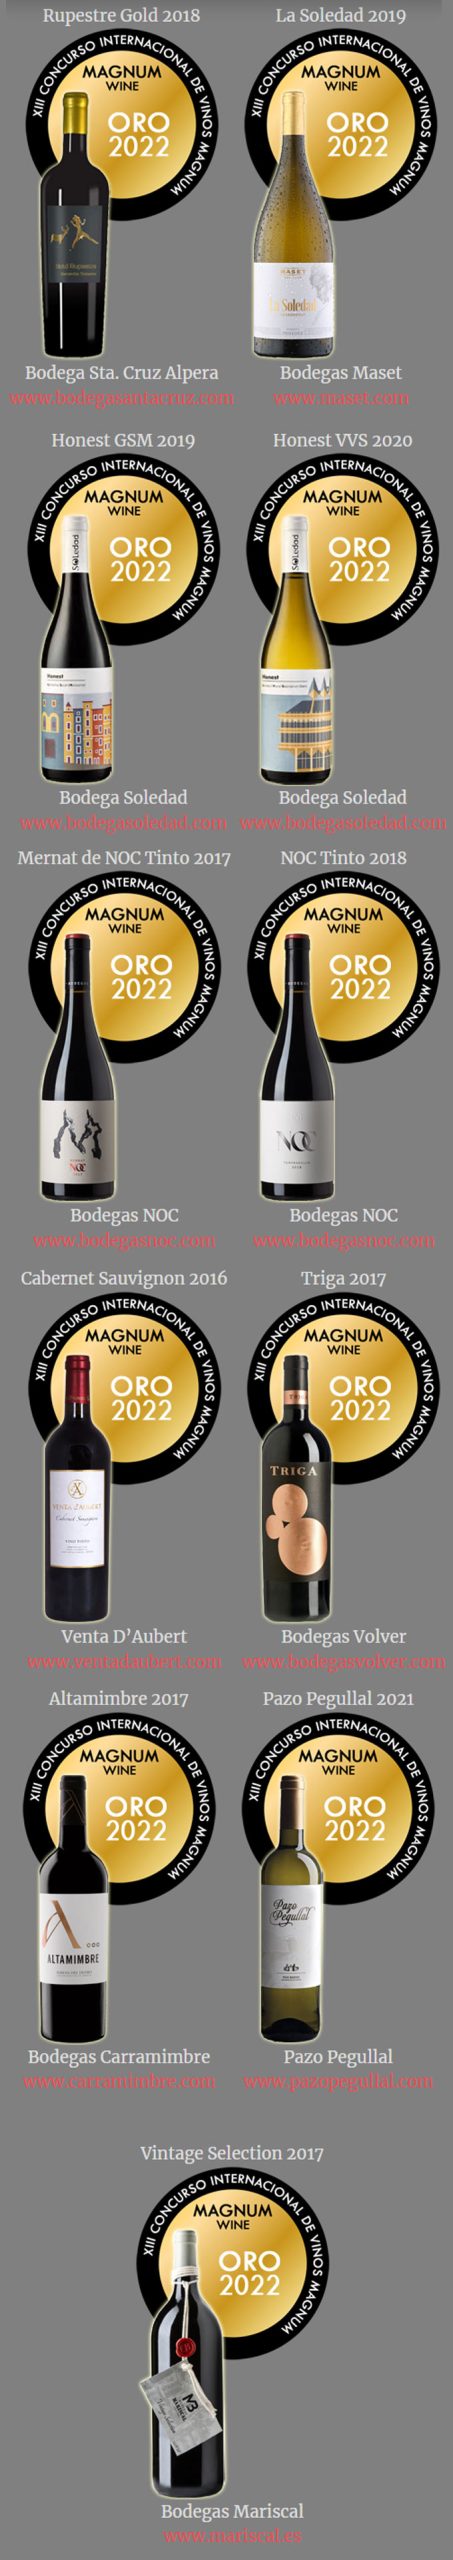 Concurso de vinos Magnum